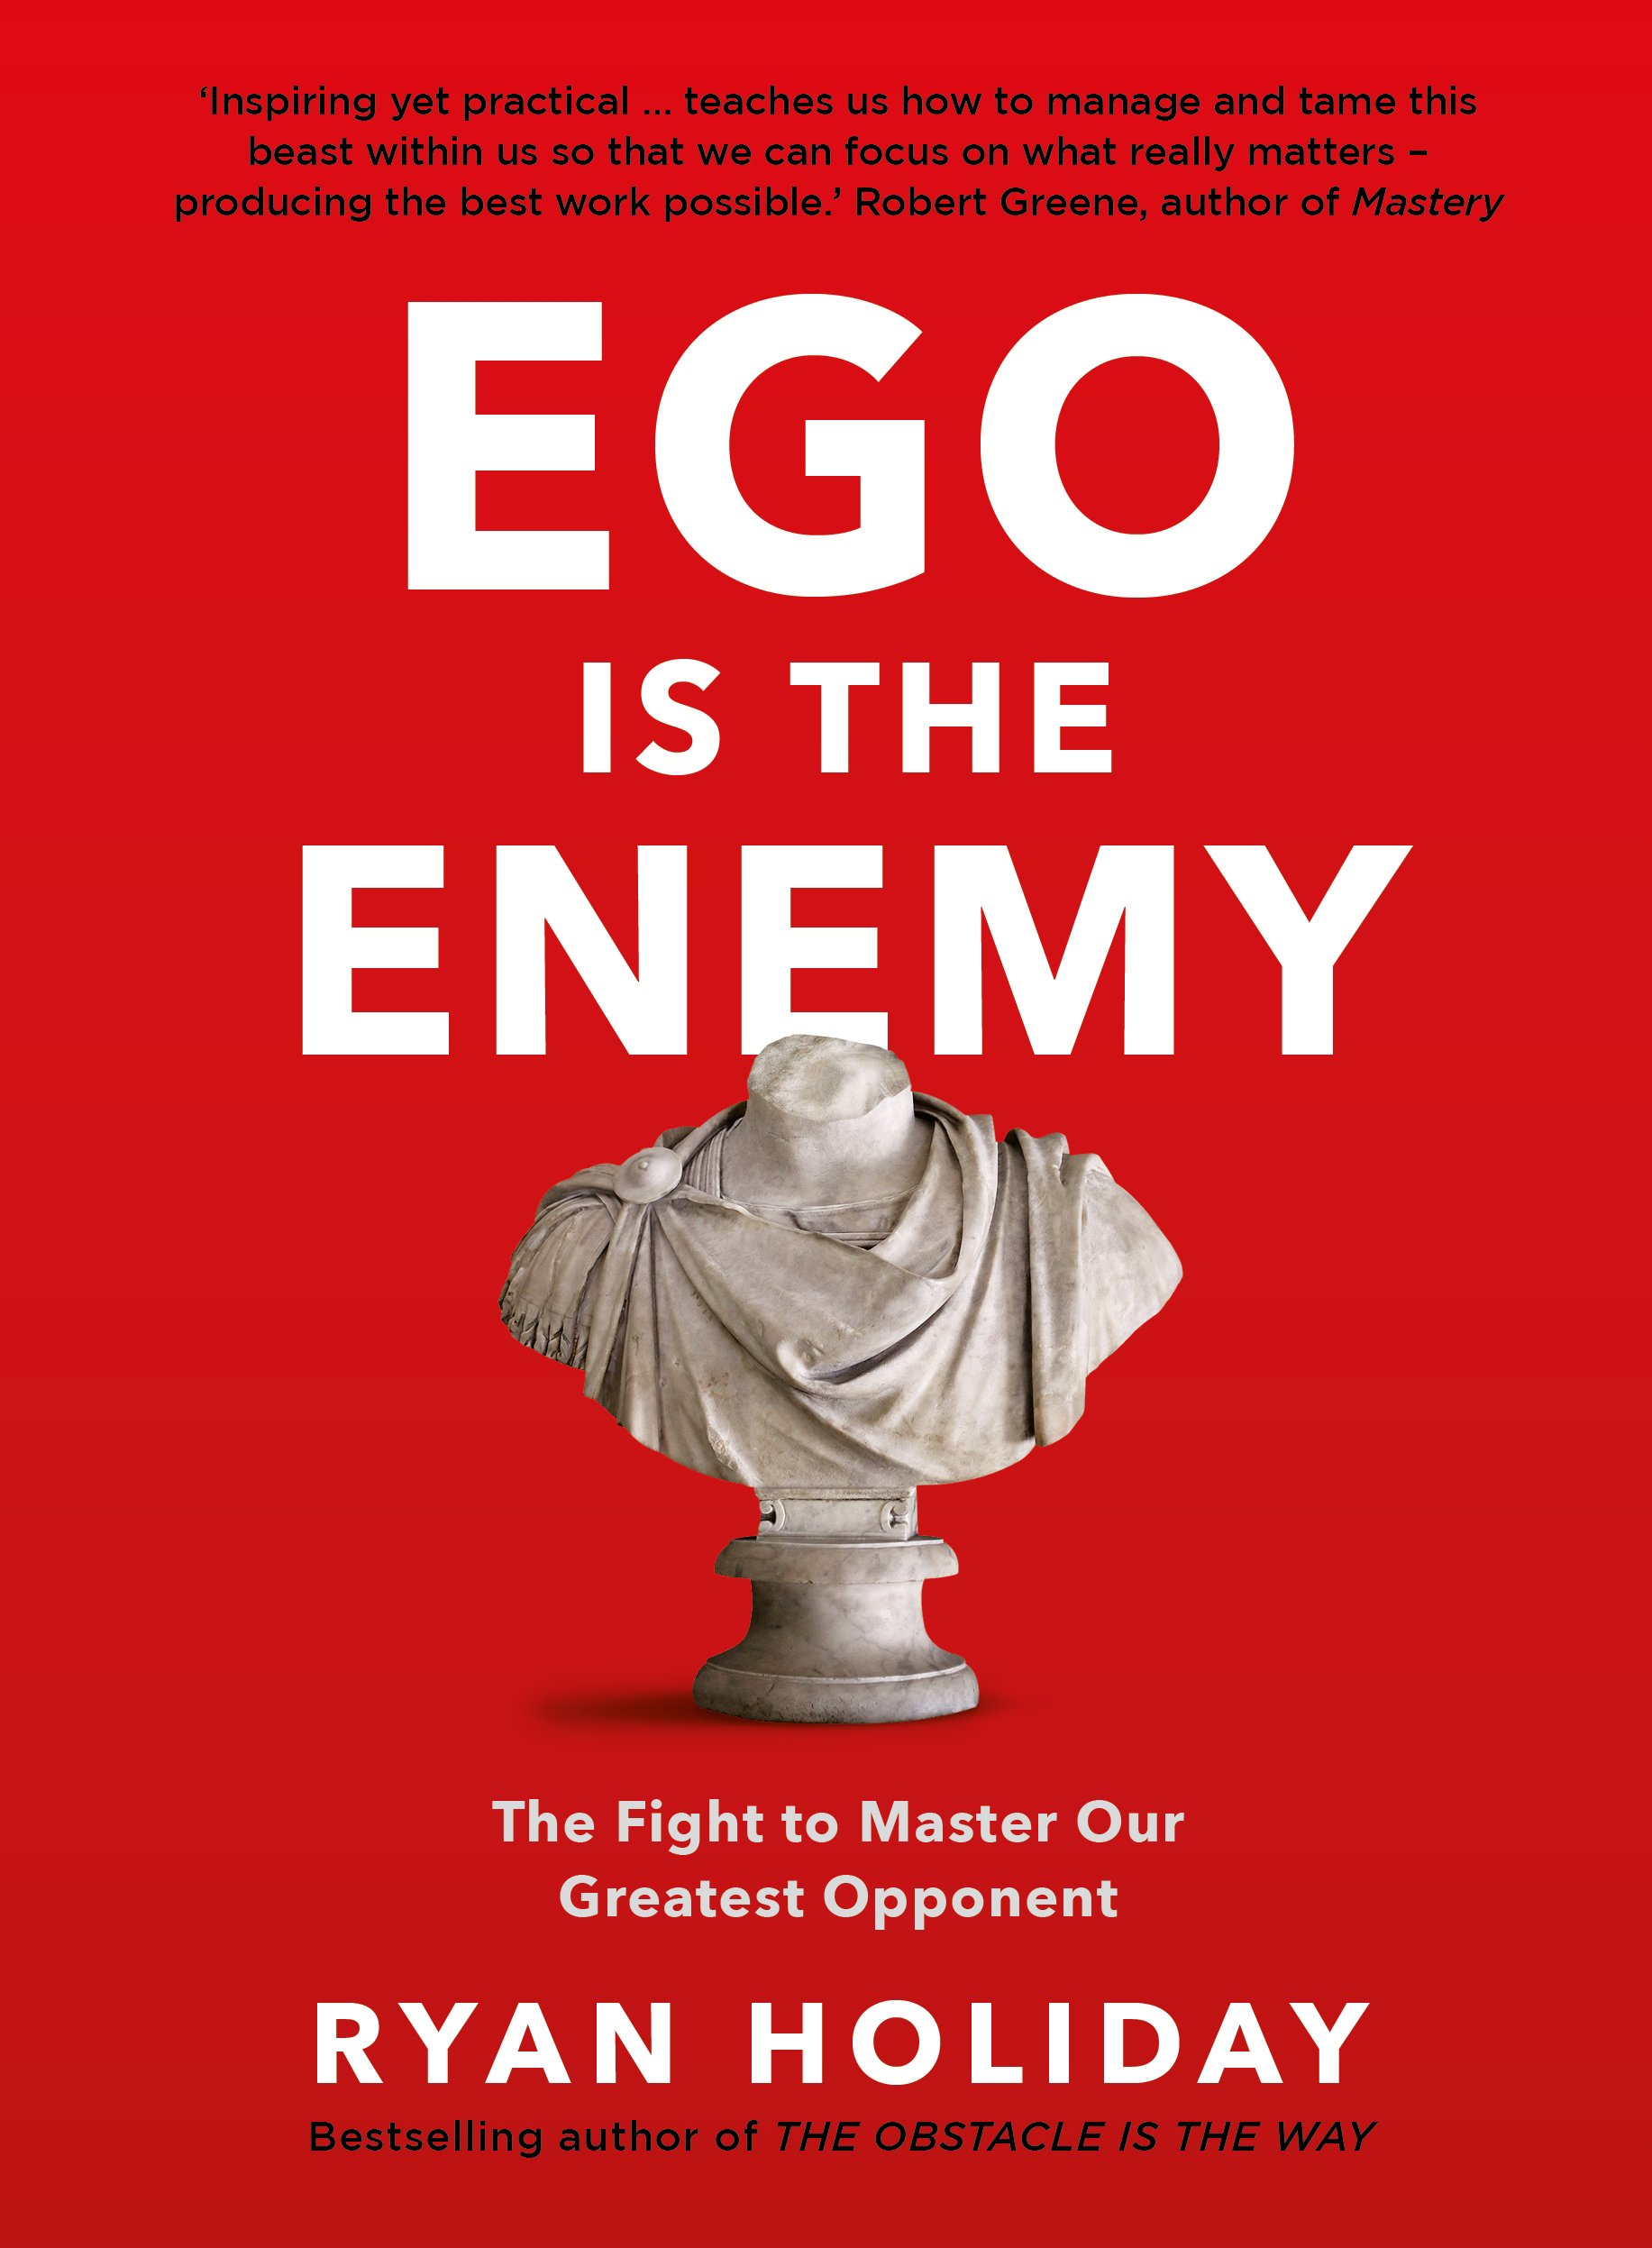 ego is enemy purhase